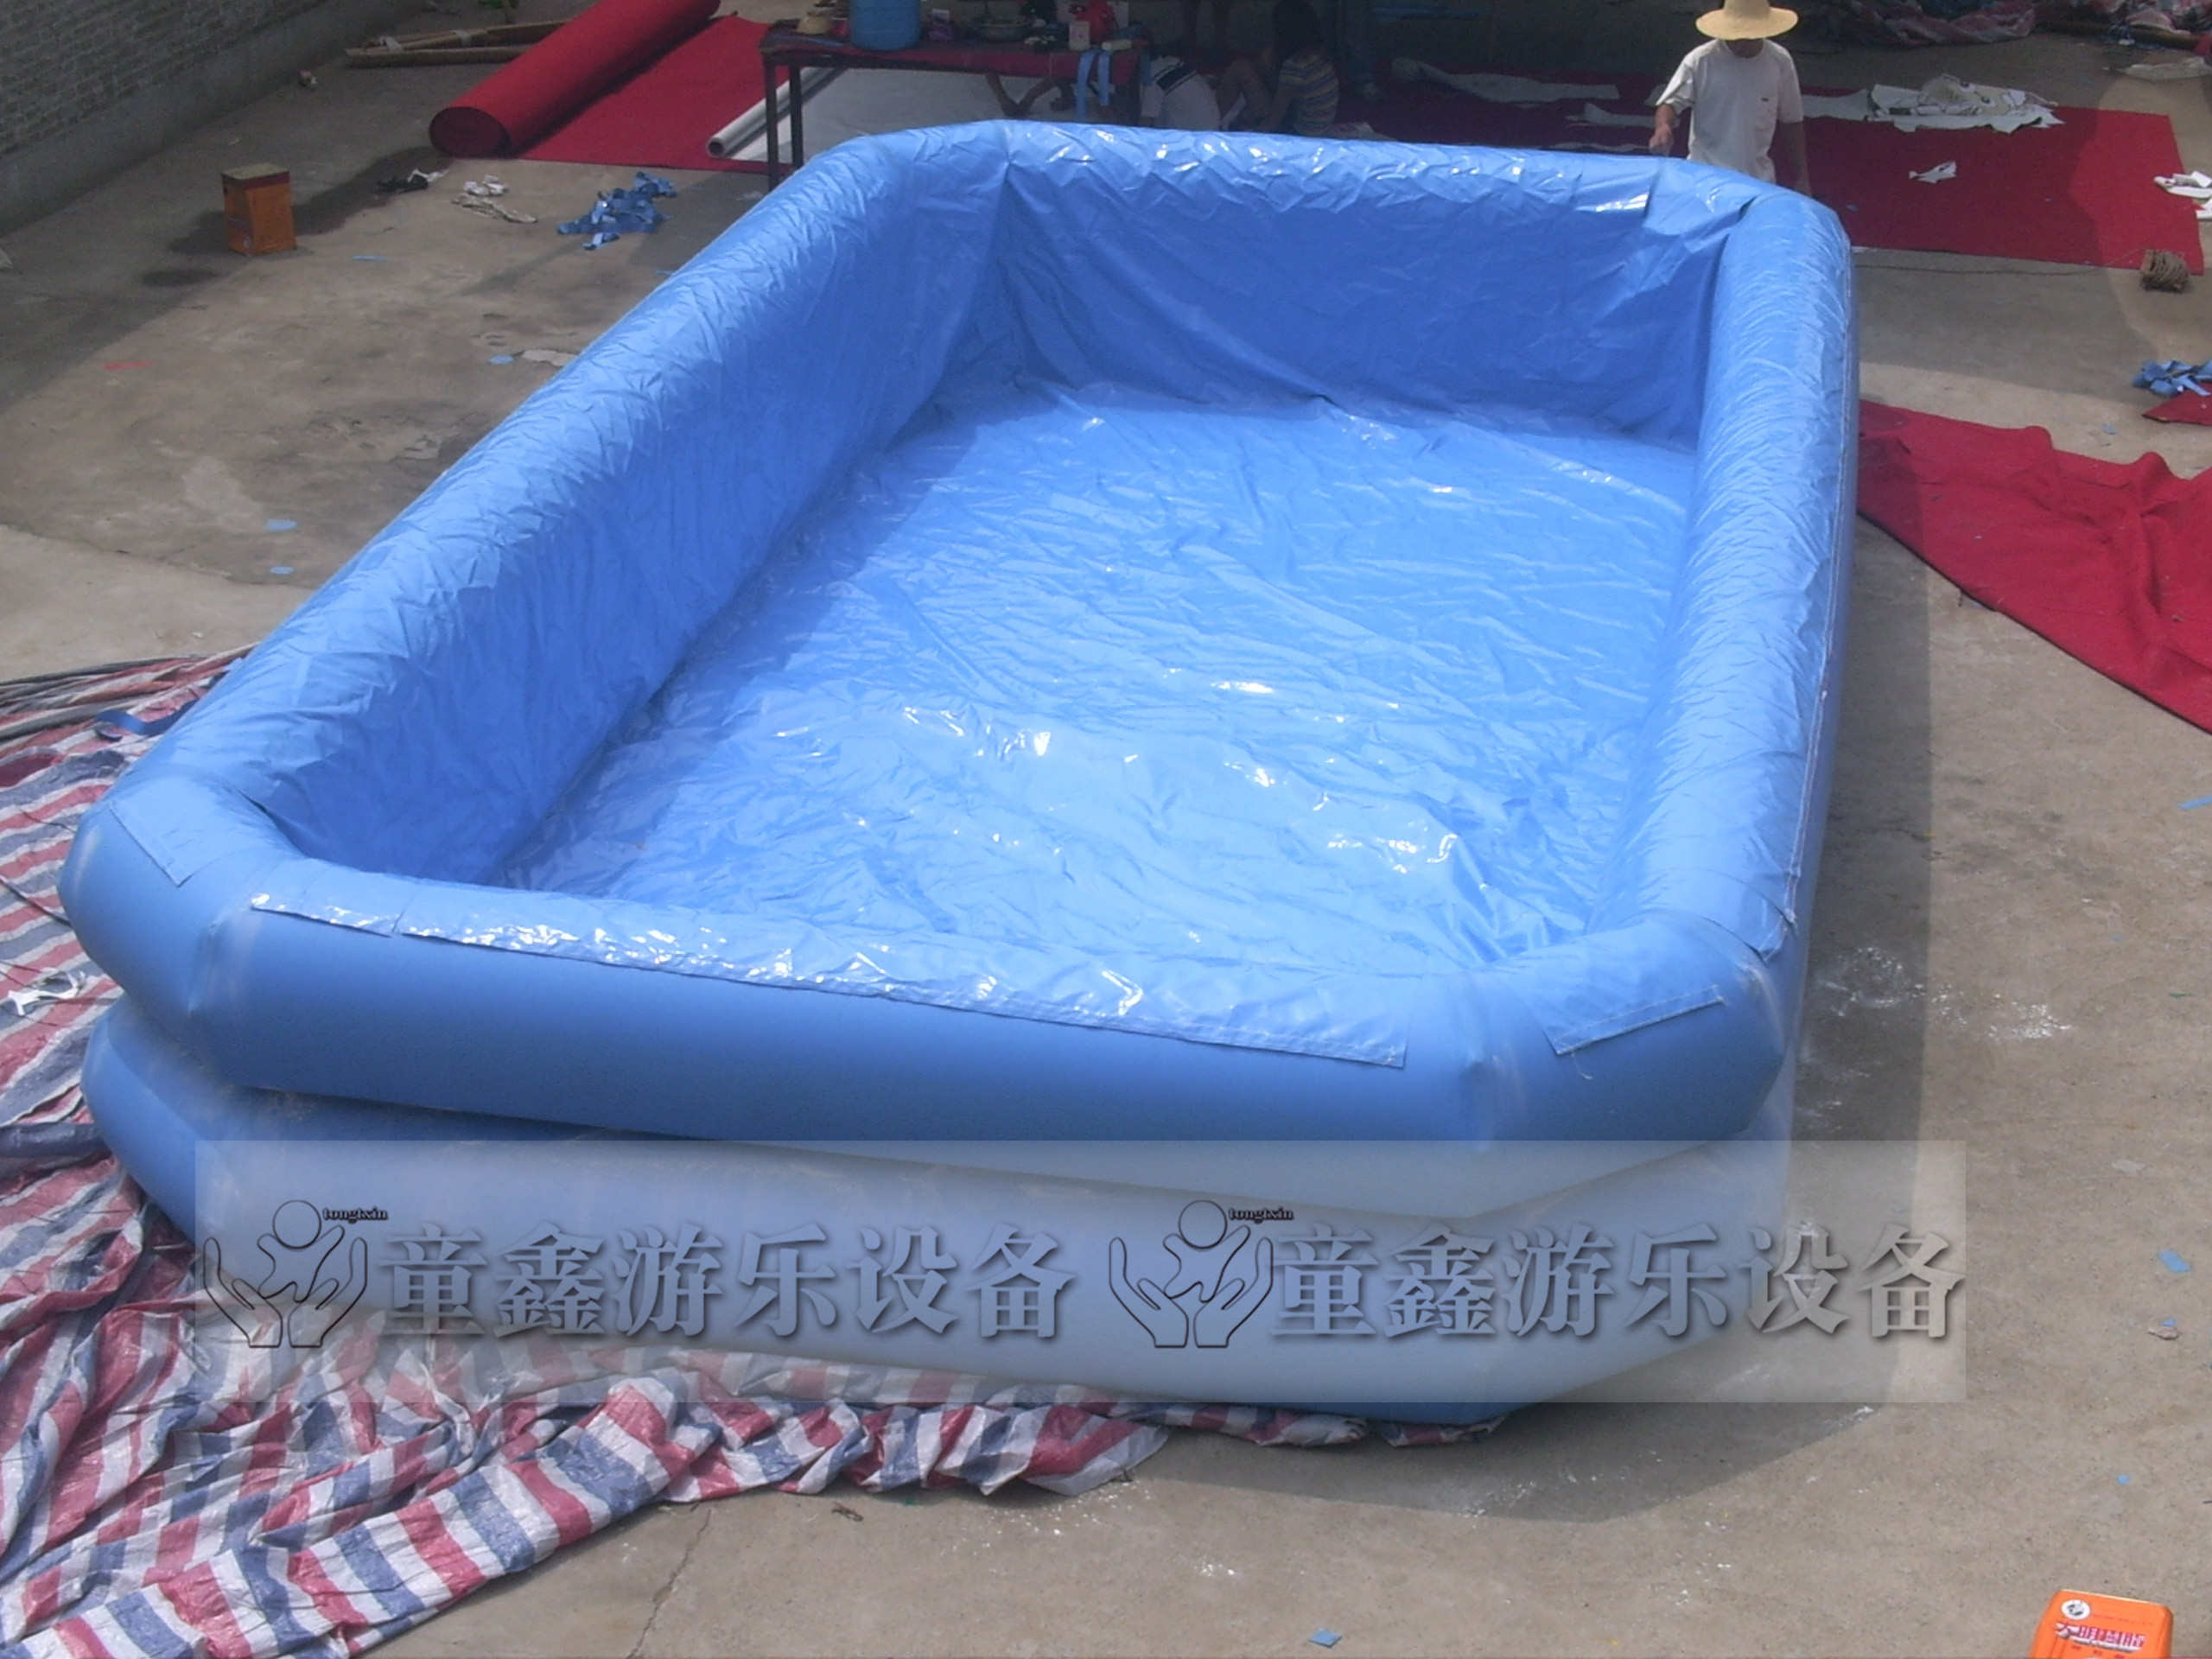 郑州市充气水池厂家充气水池　充气水池儿童乐园　充气水池定做厂家　充气水池游泳池　充气水池滑梯